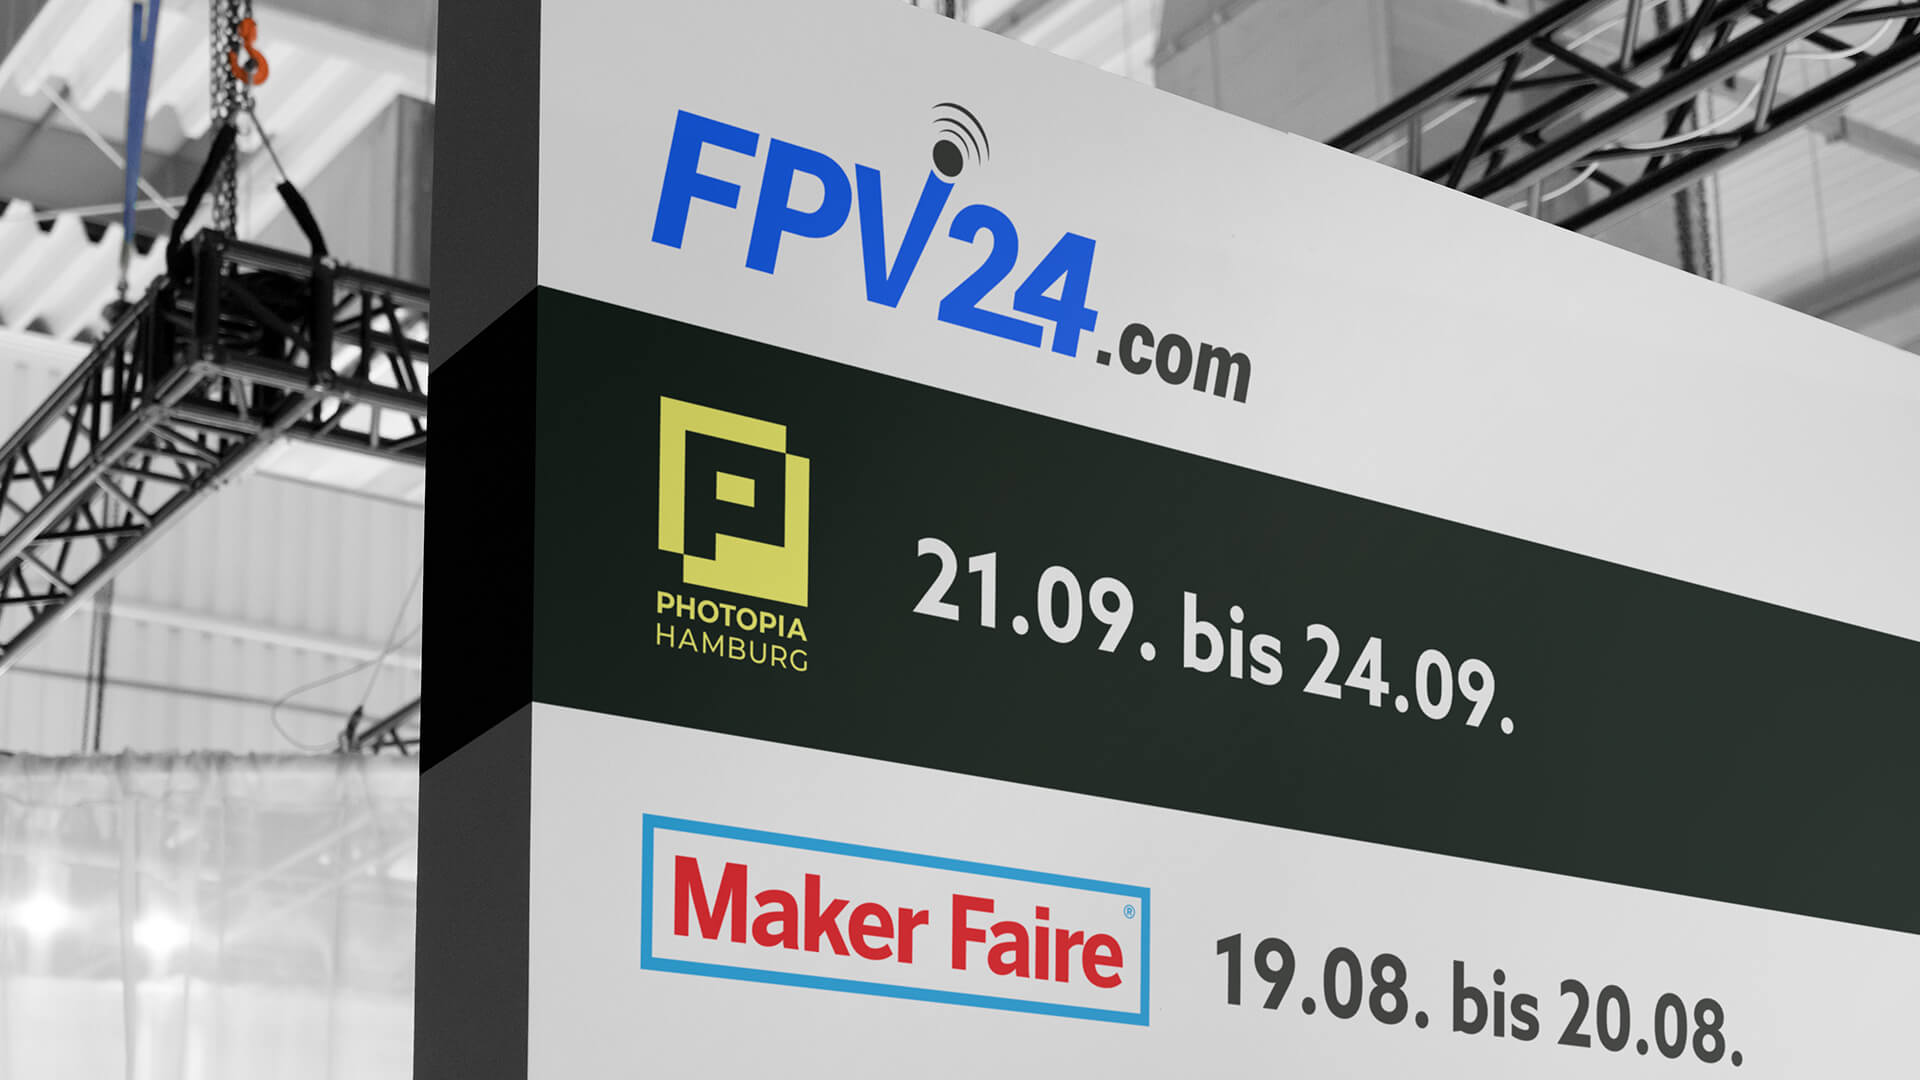 FPV24 auf der Maker Faire und Photopia